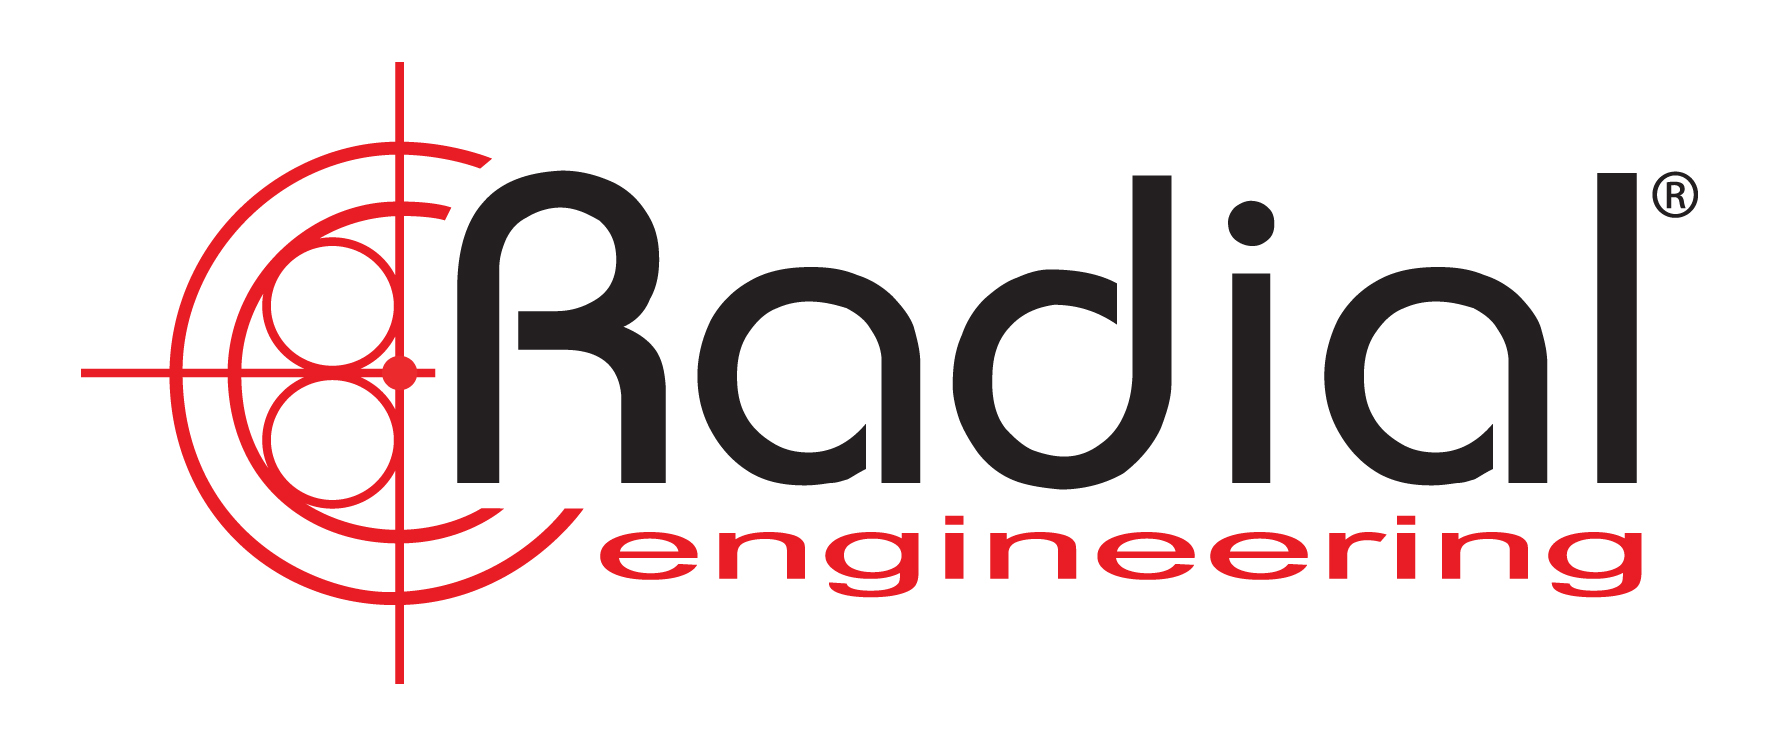 Radial engineering